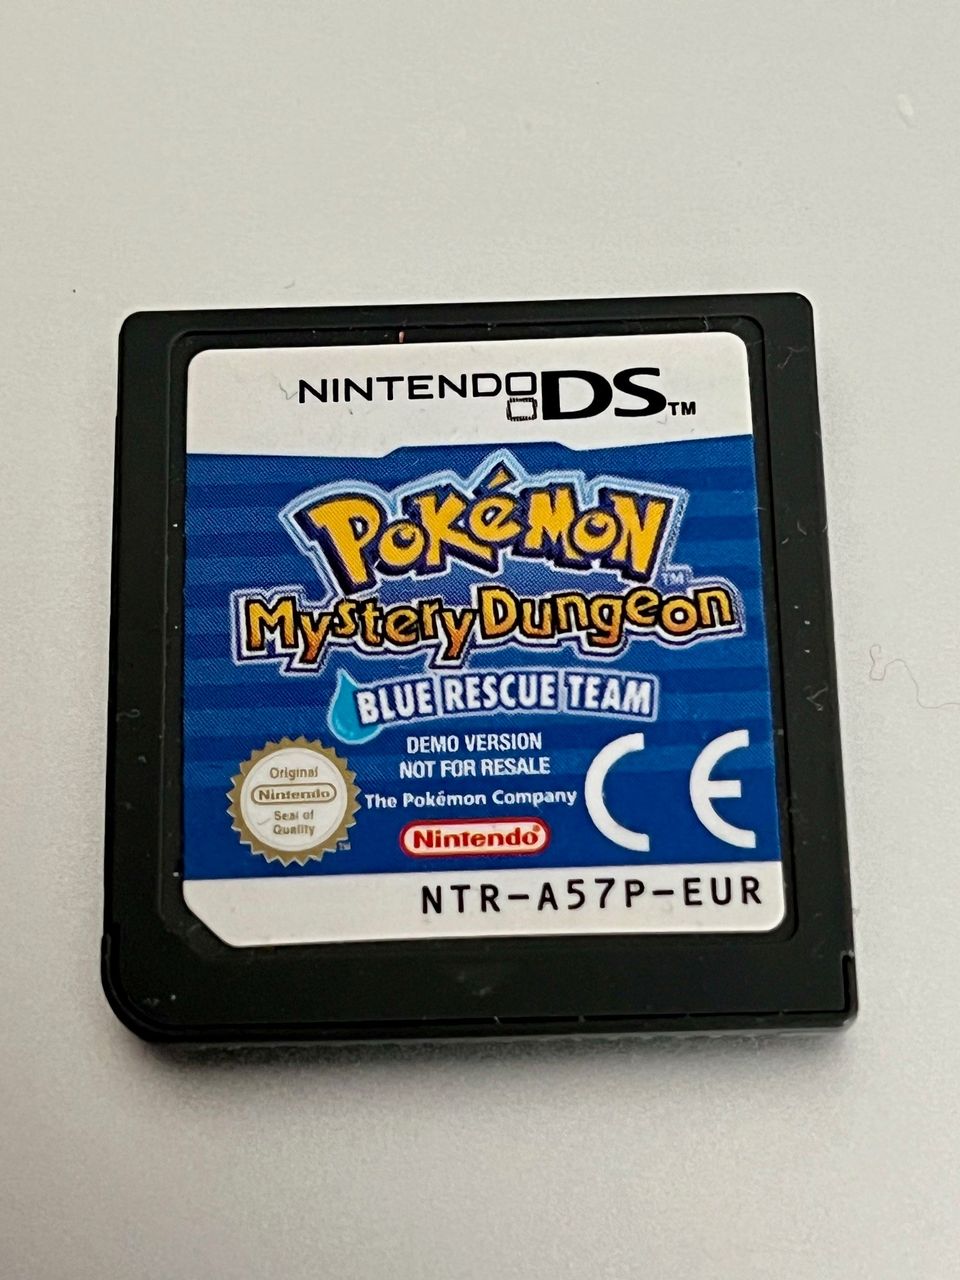 Nintendo DS: Pokémon Mystery dungeon blue rescue team demo version